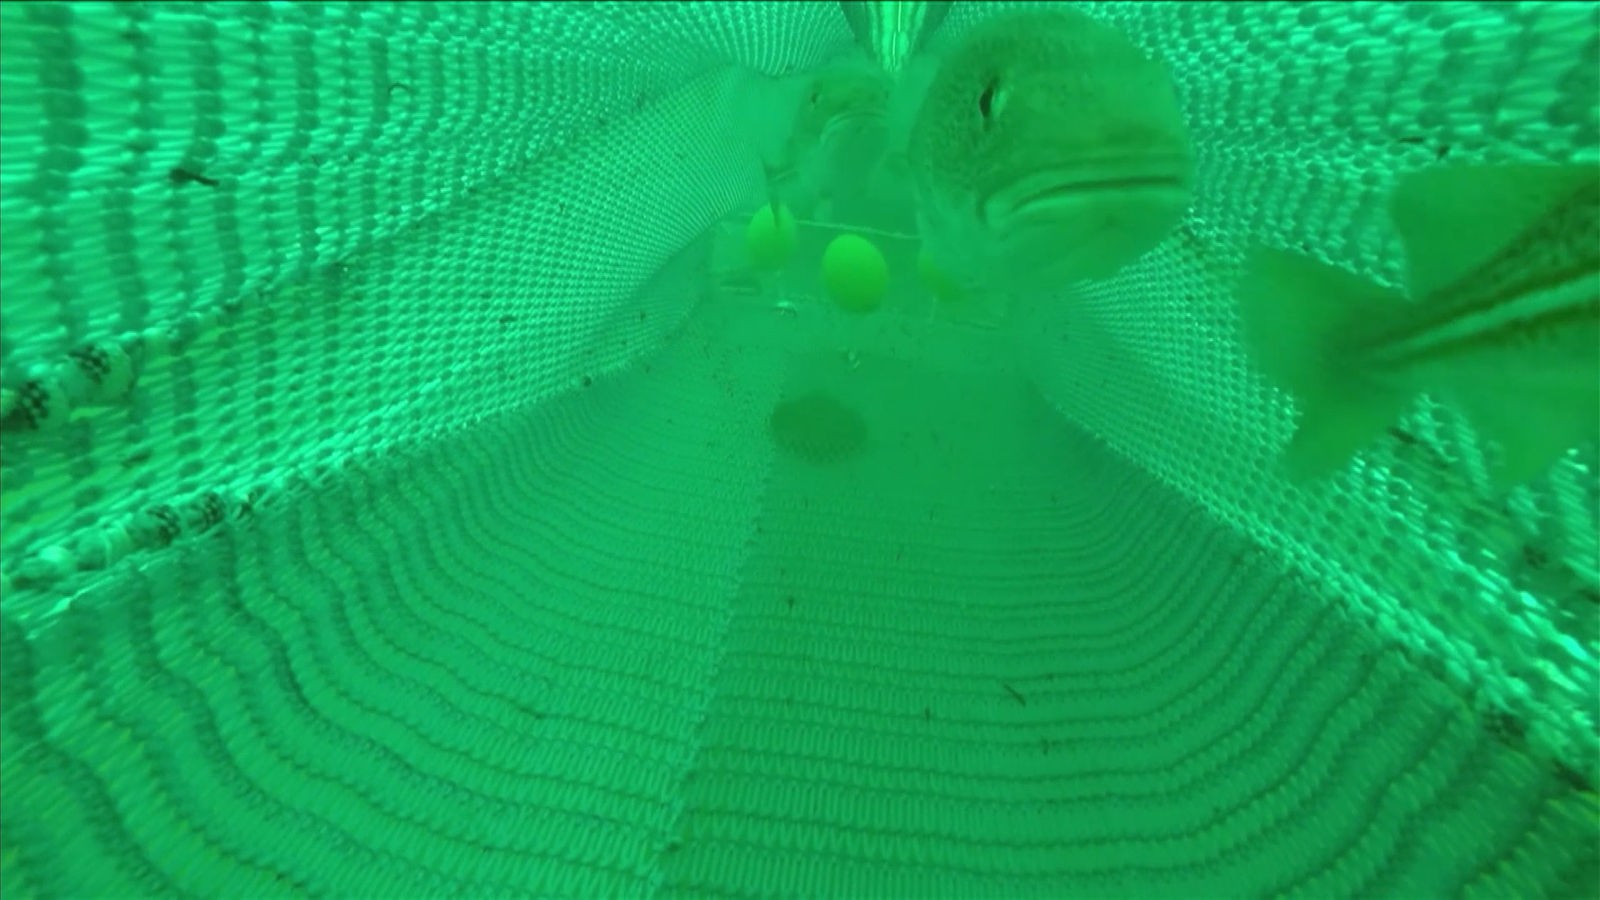 Fische schwimmen in einem Netz im Wasser.